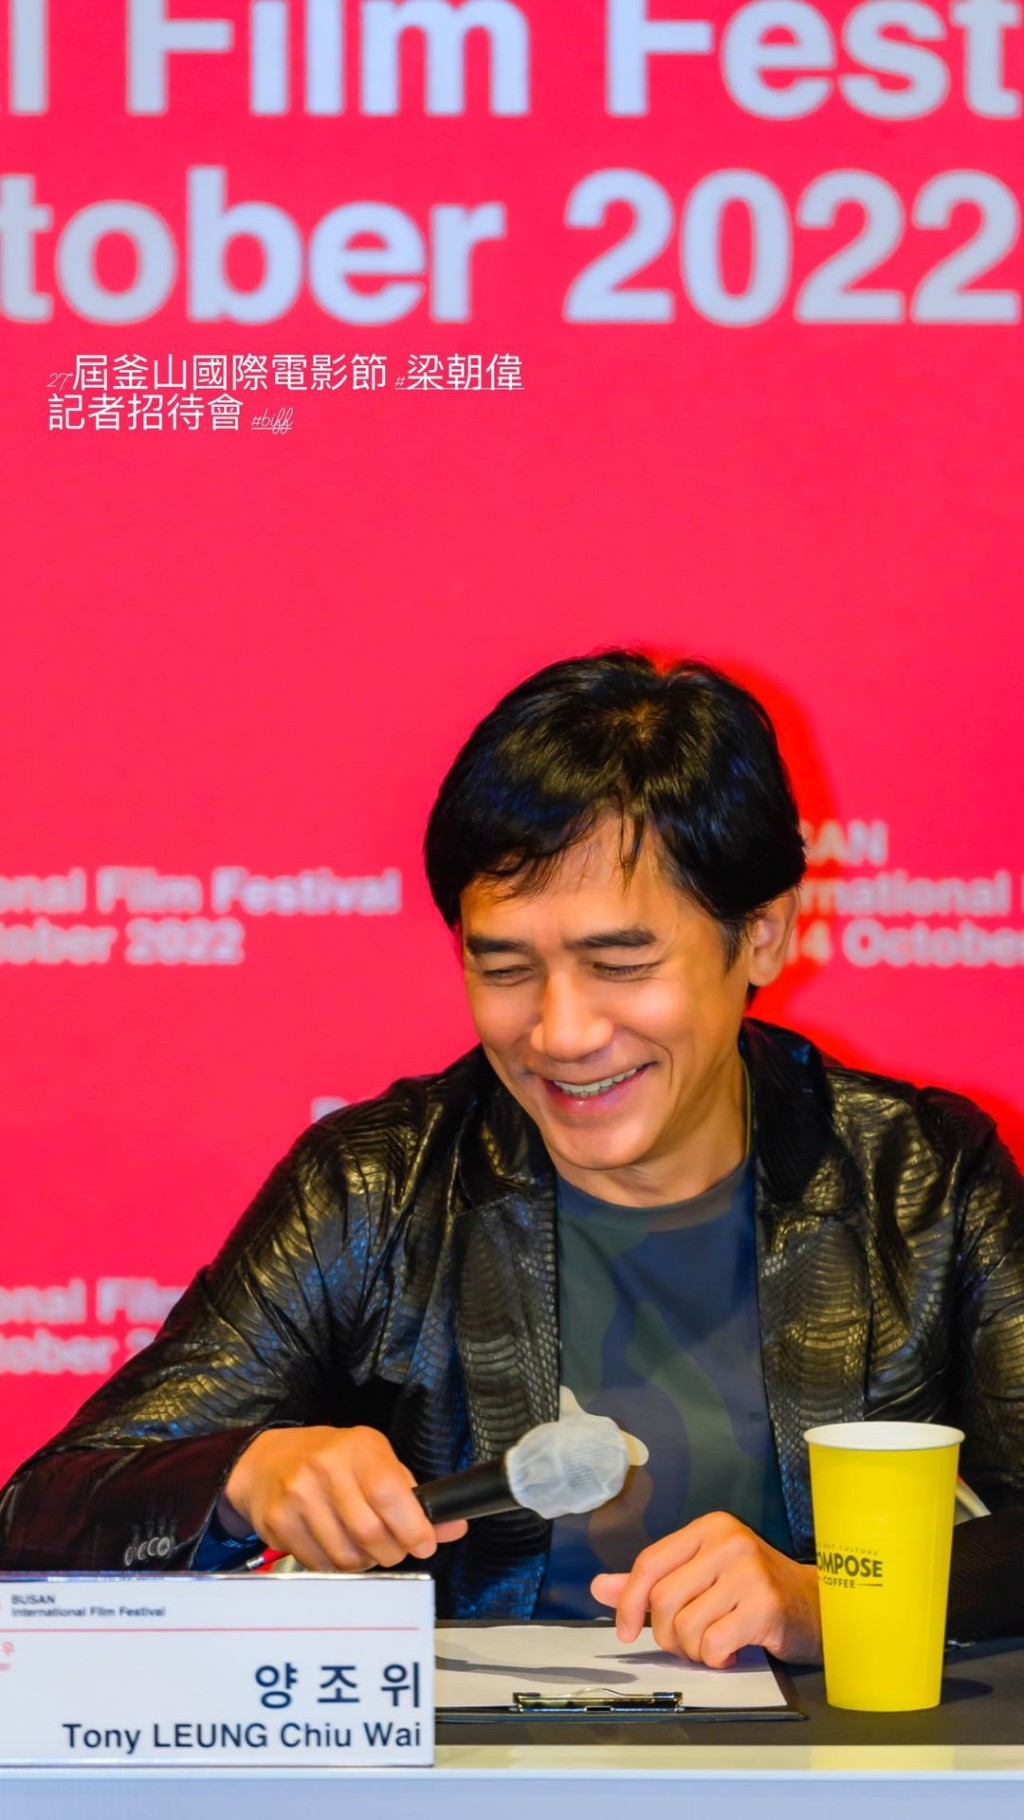 去年底梁朝伟获得釜山电影节的亚洲电影人奖，在当地出席不少活动，刘嘉玲当时亦有爱相随。